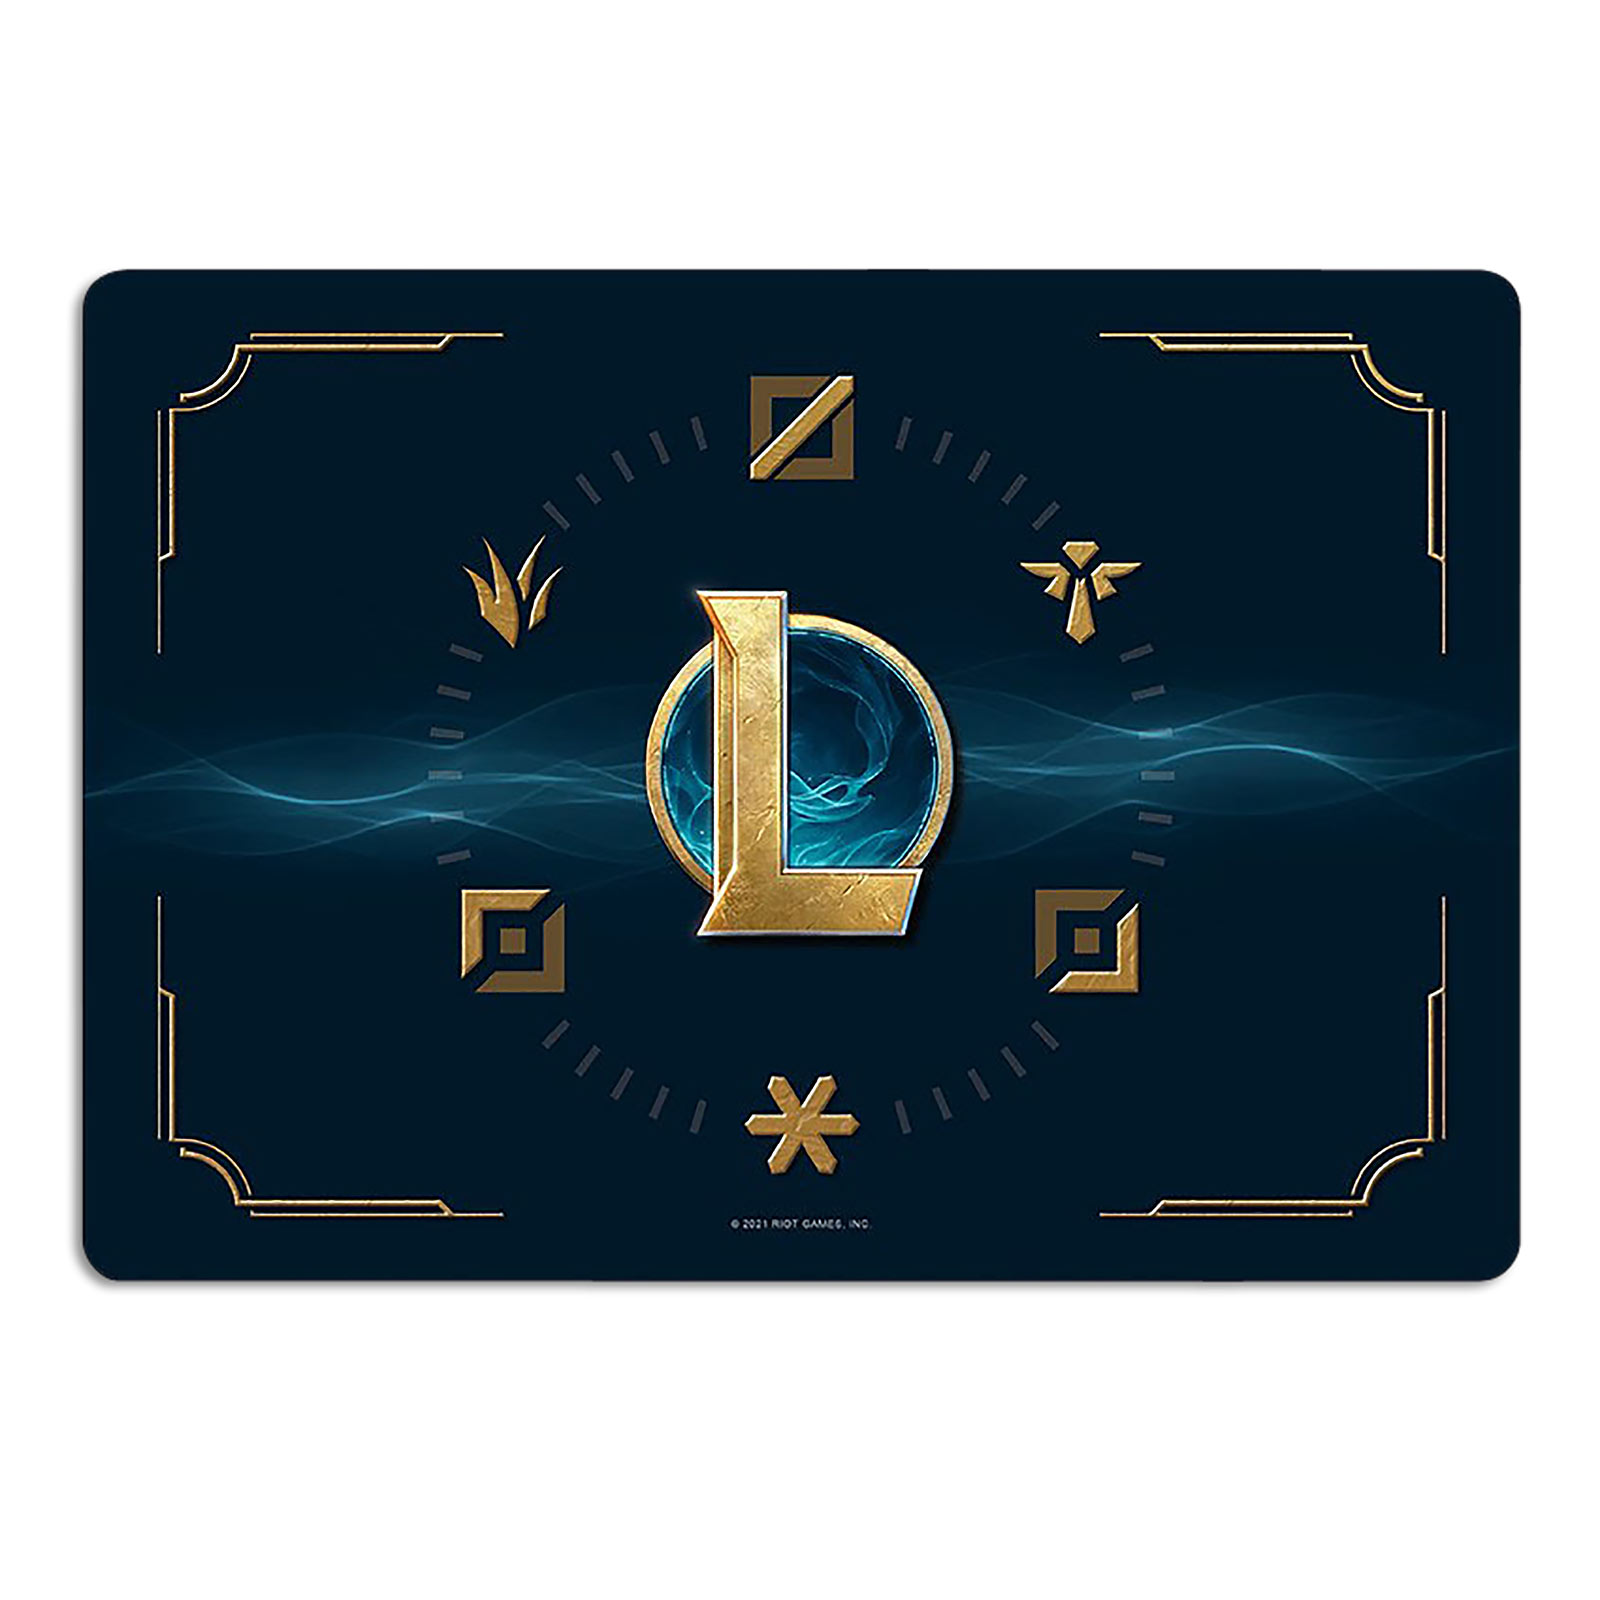 League of Legends - Hextech Logo Mousepad